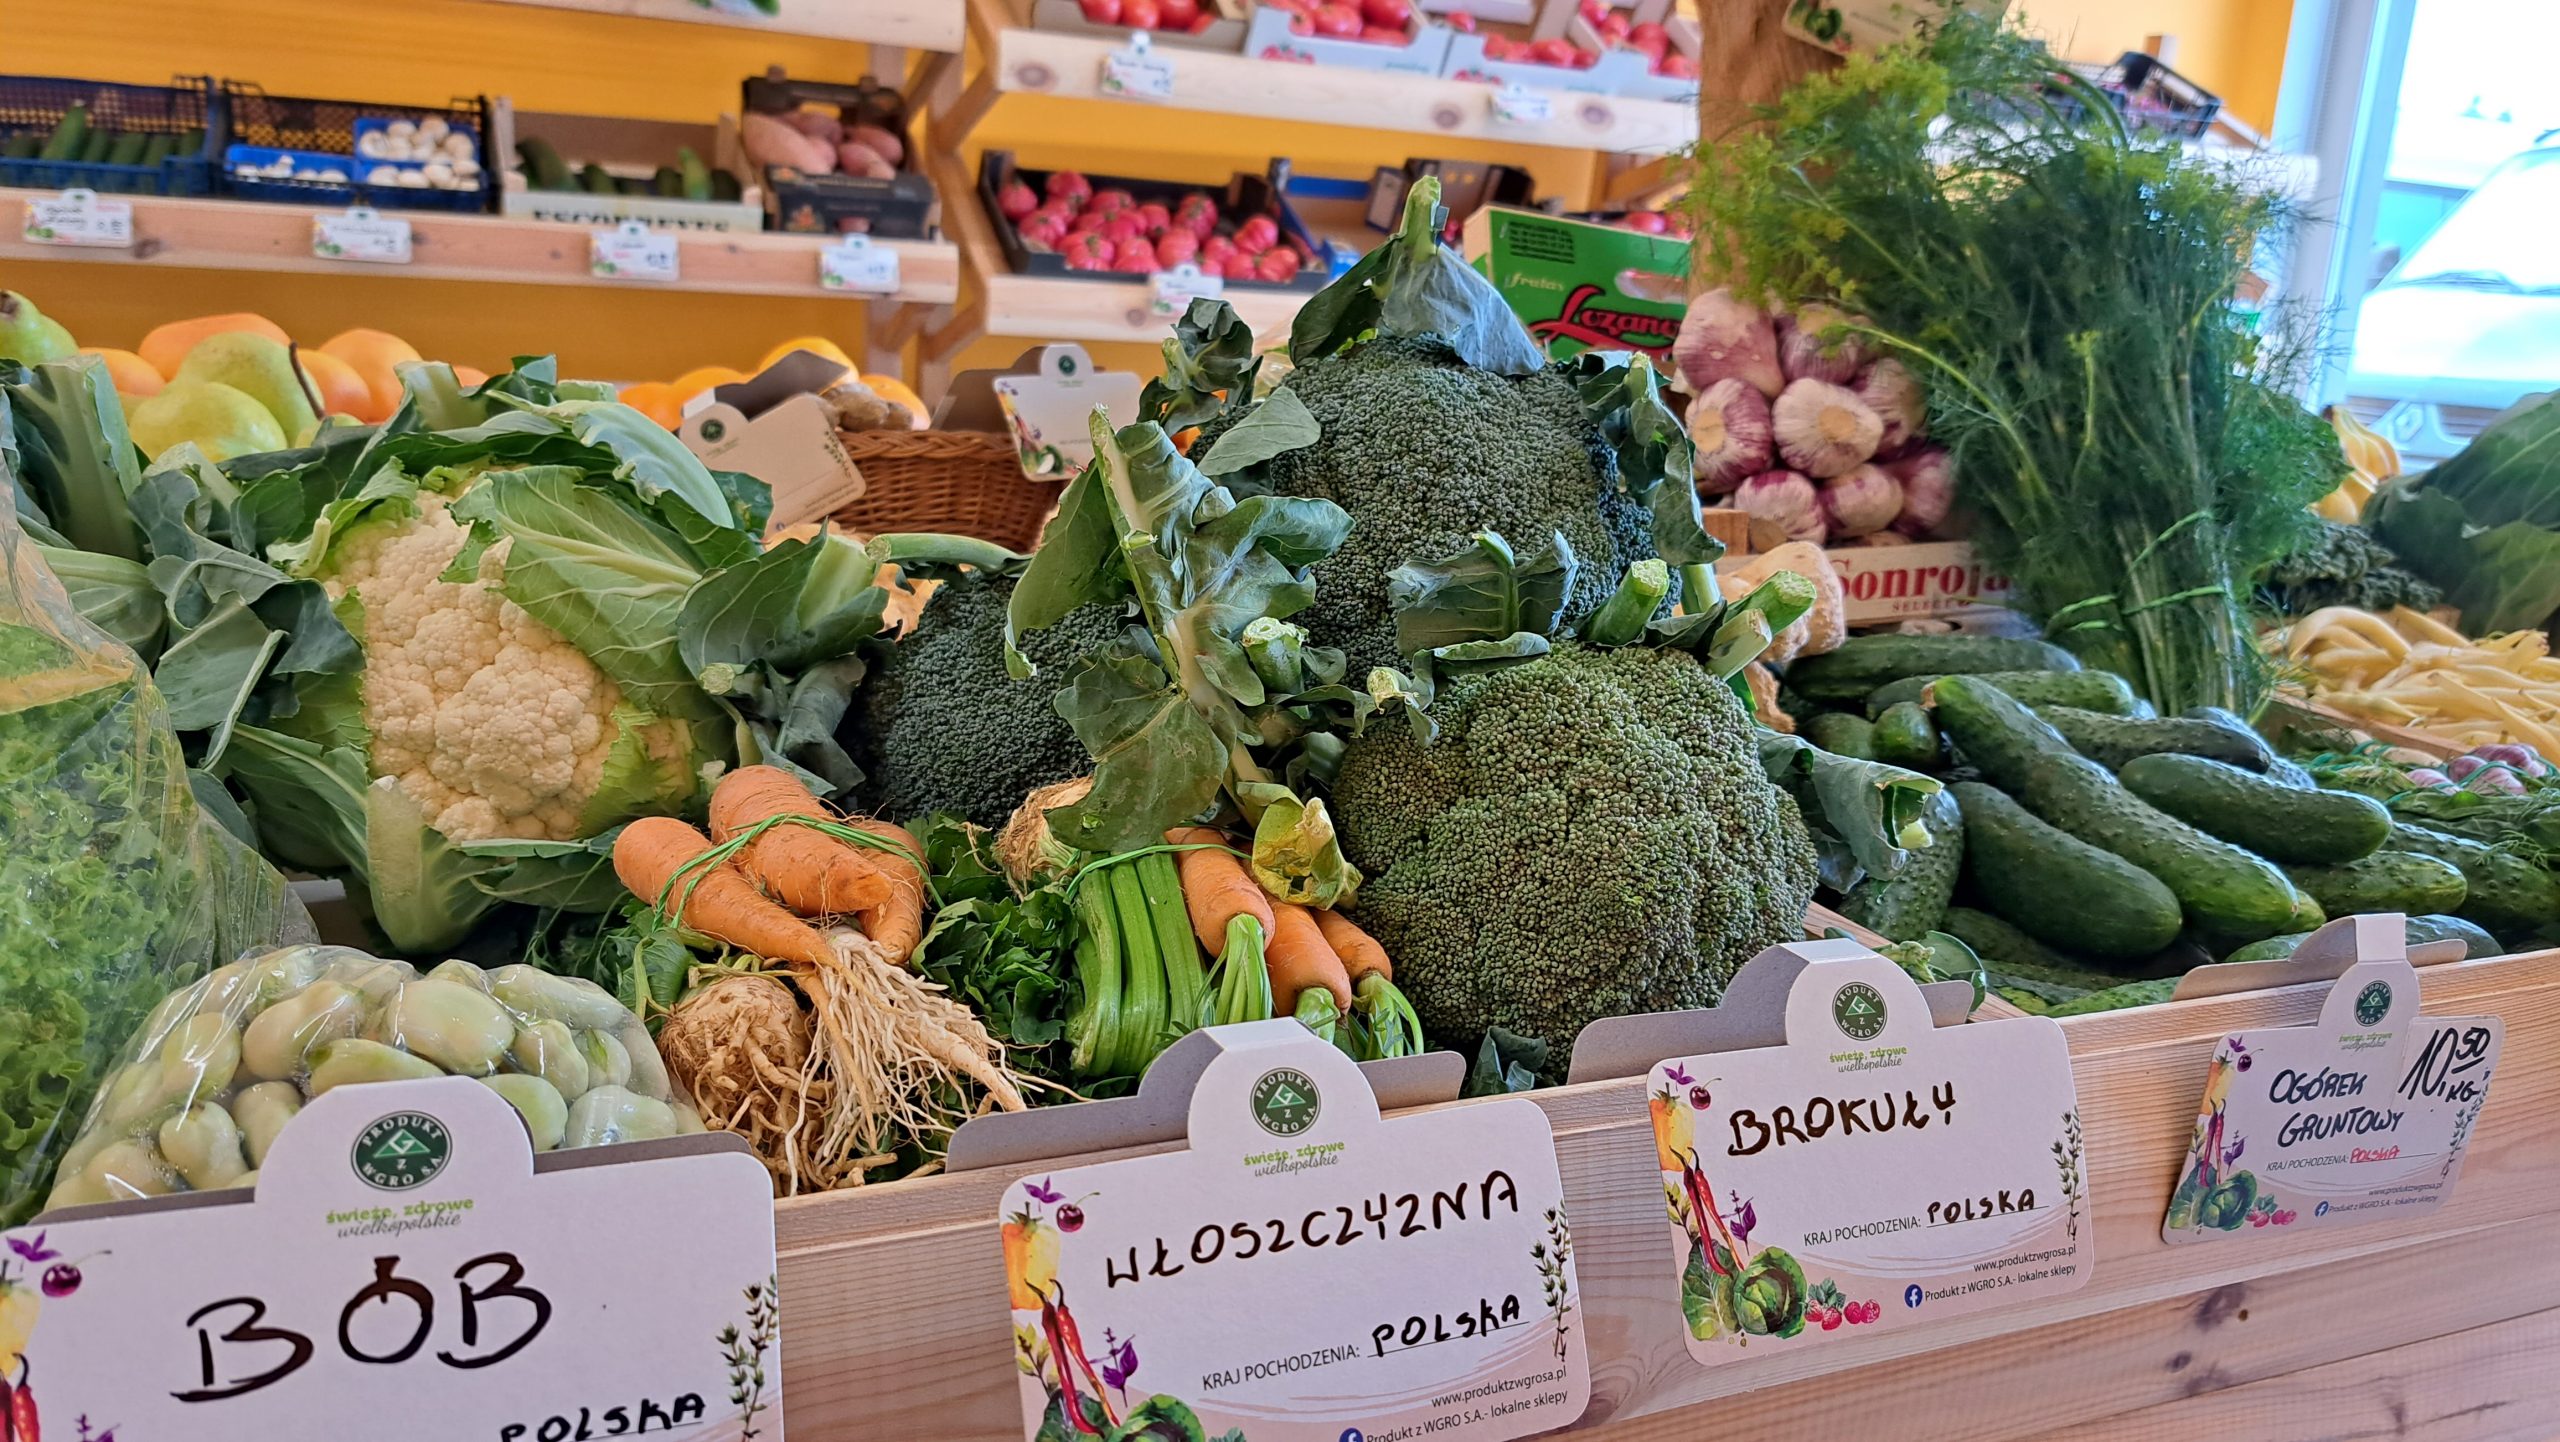 Sprawdziliśmy, gdzie kupisz warzywa i owoce prosto z pola i ile za nie zapłacisz